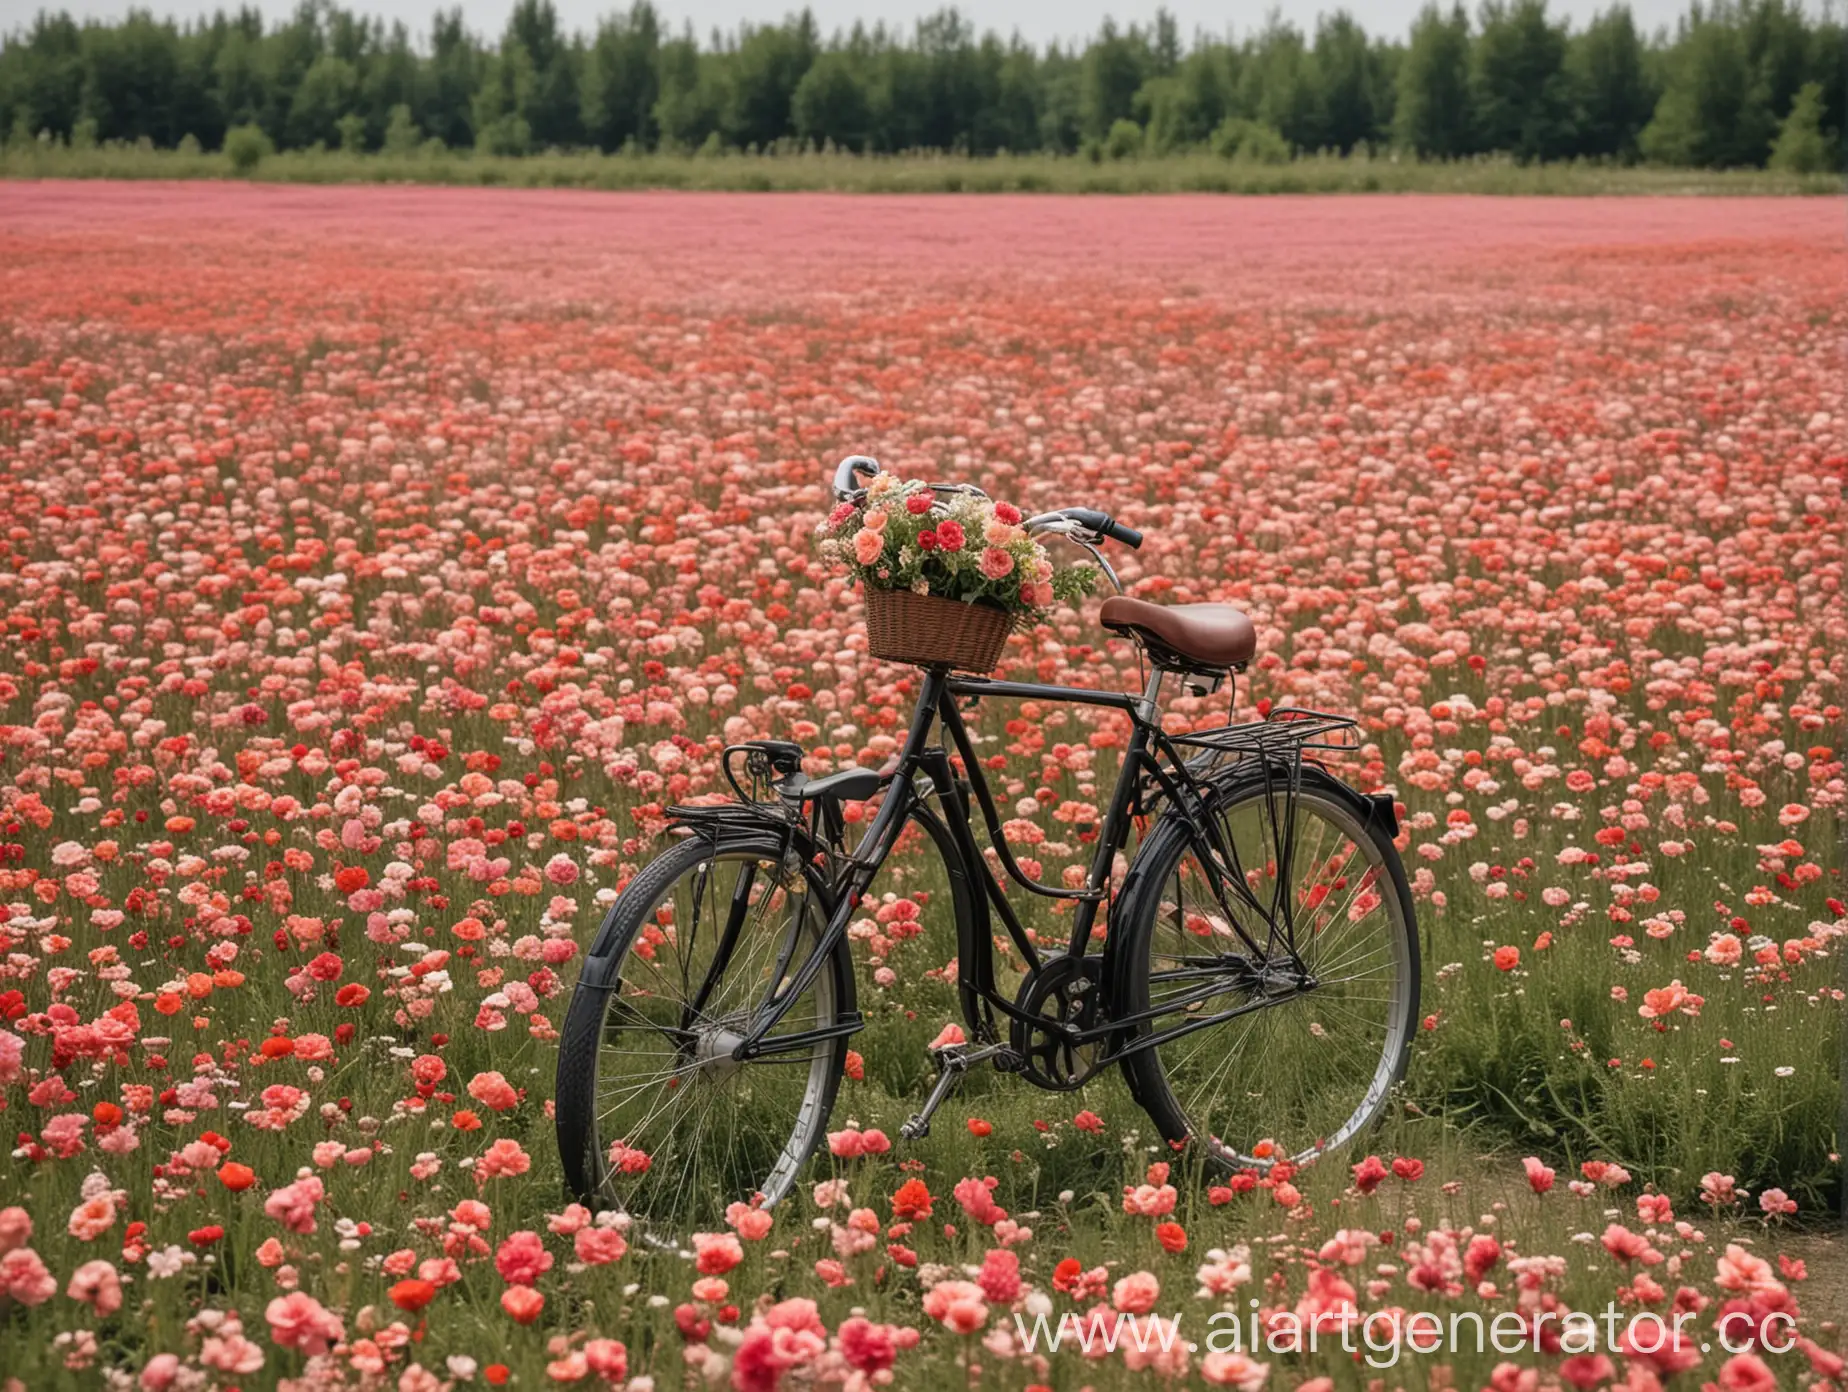 цветочное поле с велосипедом 2 метра в высоту 1,5 в ширину для фотосесии

